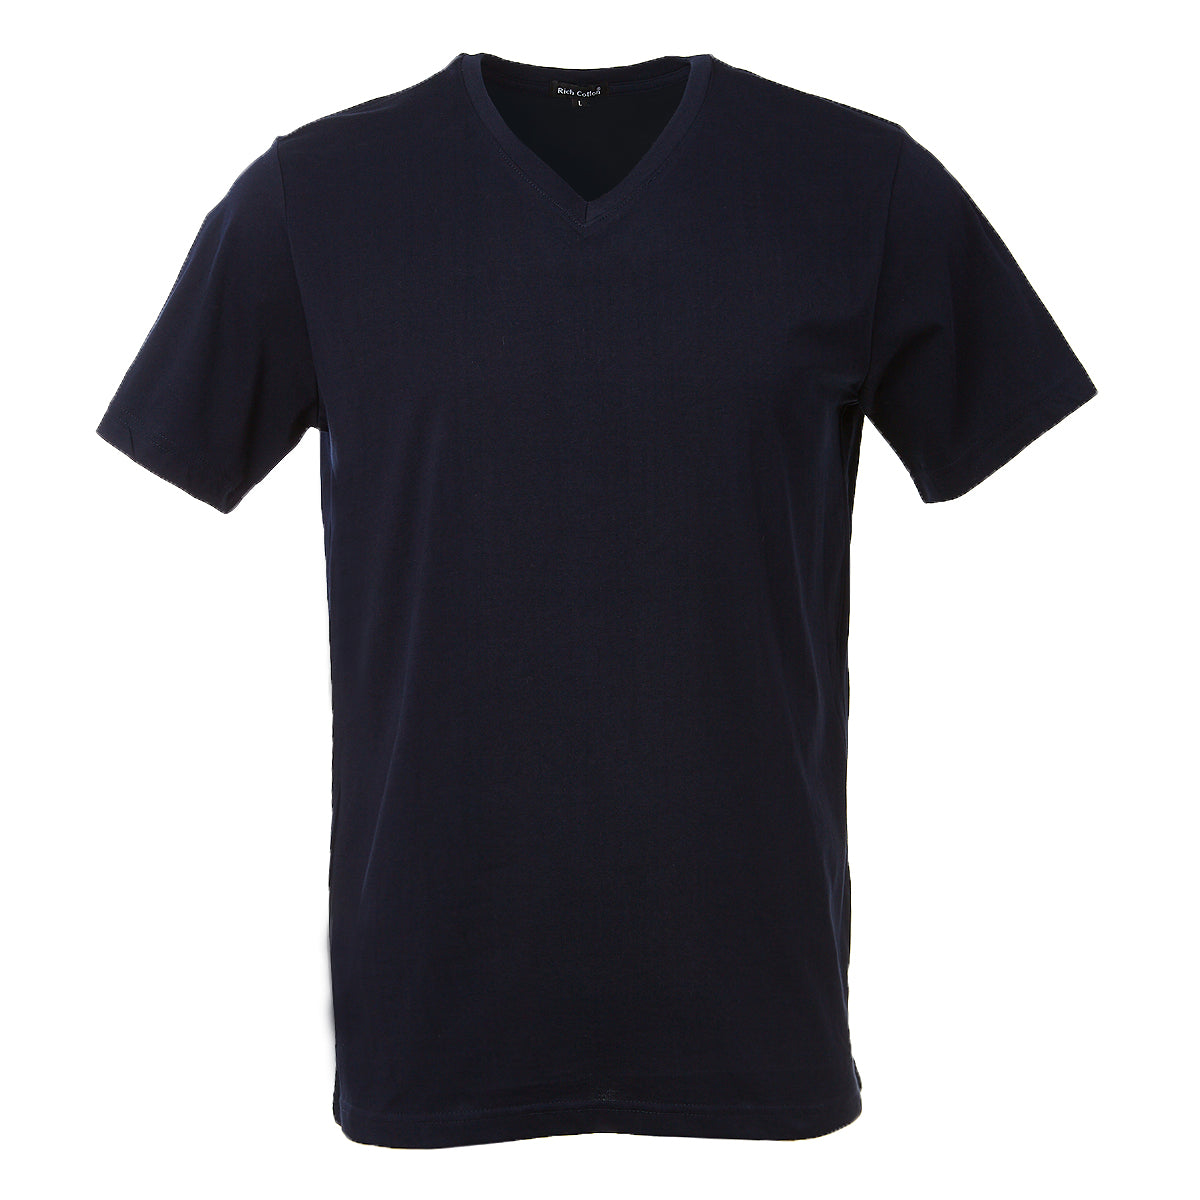 V Neck Unisex T-Shirt - Rich Cotton